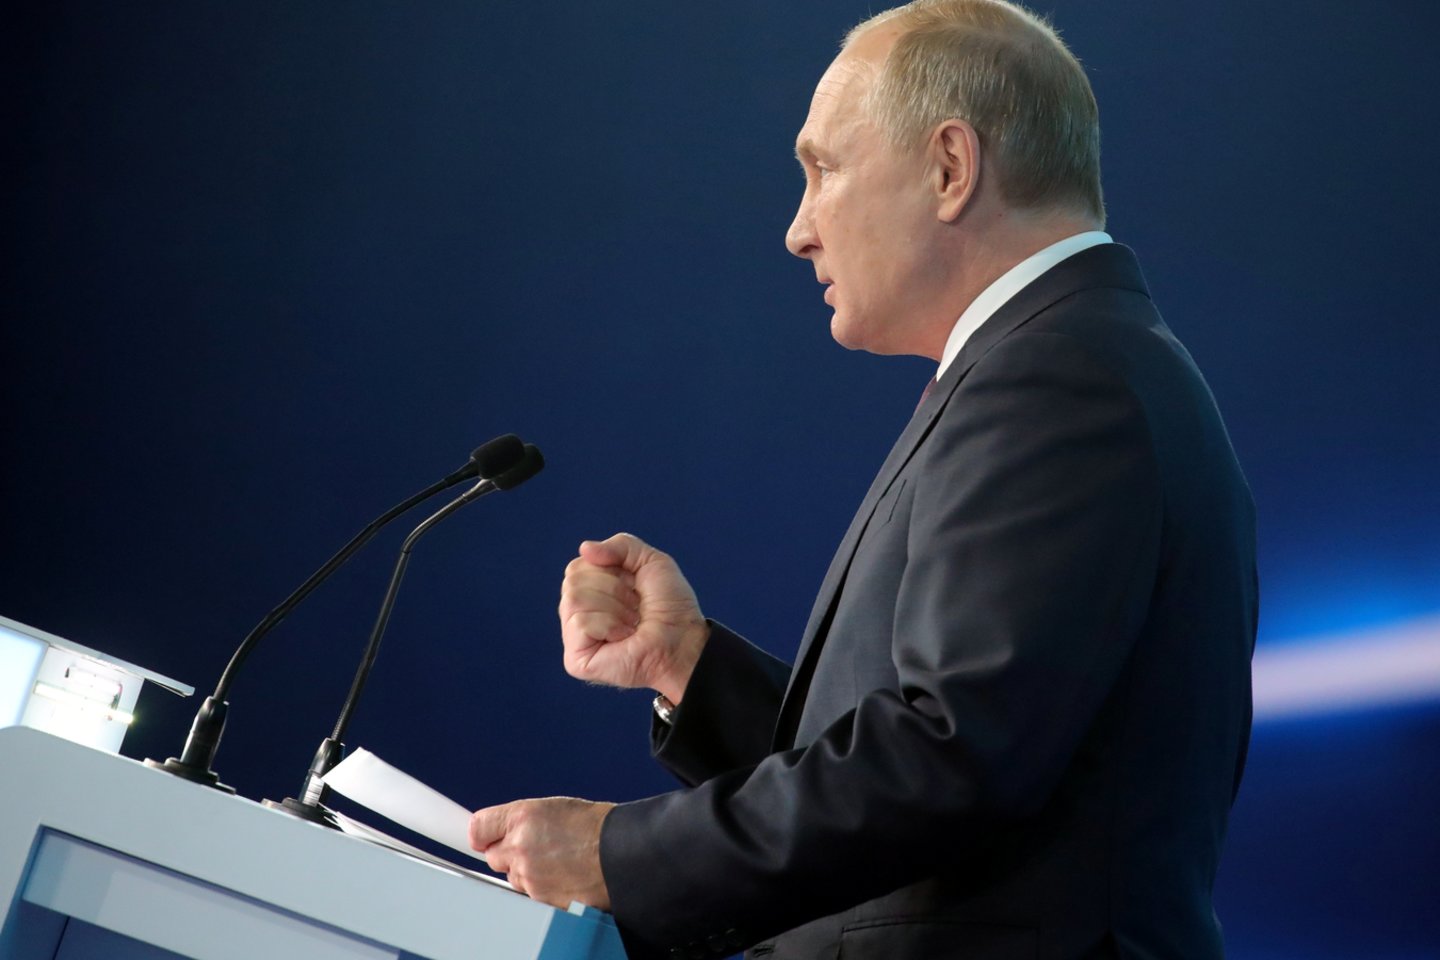  ​Rusijos prezidentas Vladimiras Putinas šeštadienį paragino jį remiančią valdančiąją partiją „Vieningoji Rusija“ rodyti iniciatyvą, o ne laukti jo nurodymų, šiam ilgai politikoje dominavusiam judėjimui prarandant populiarumą.<br>Reuters/Scanpix nuotr.